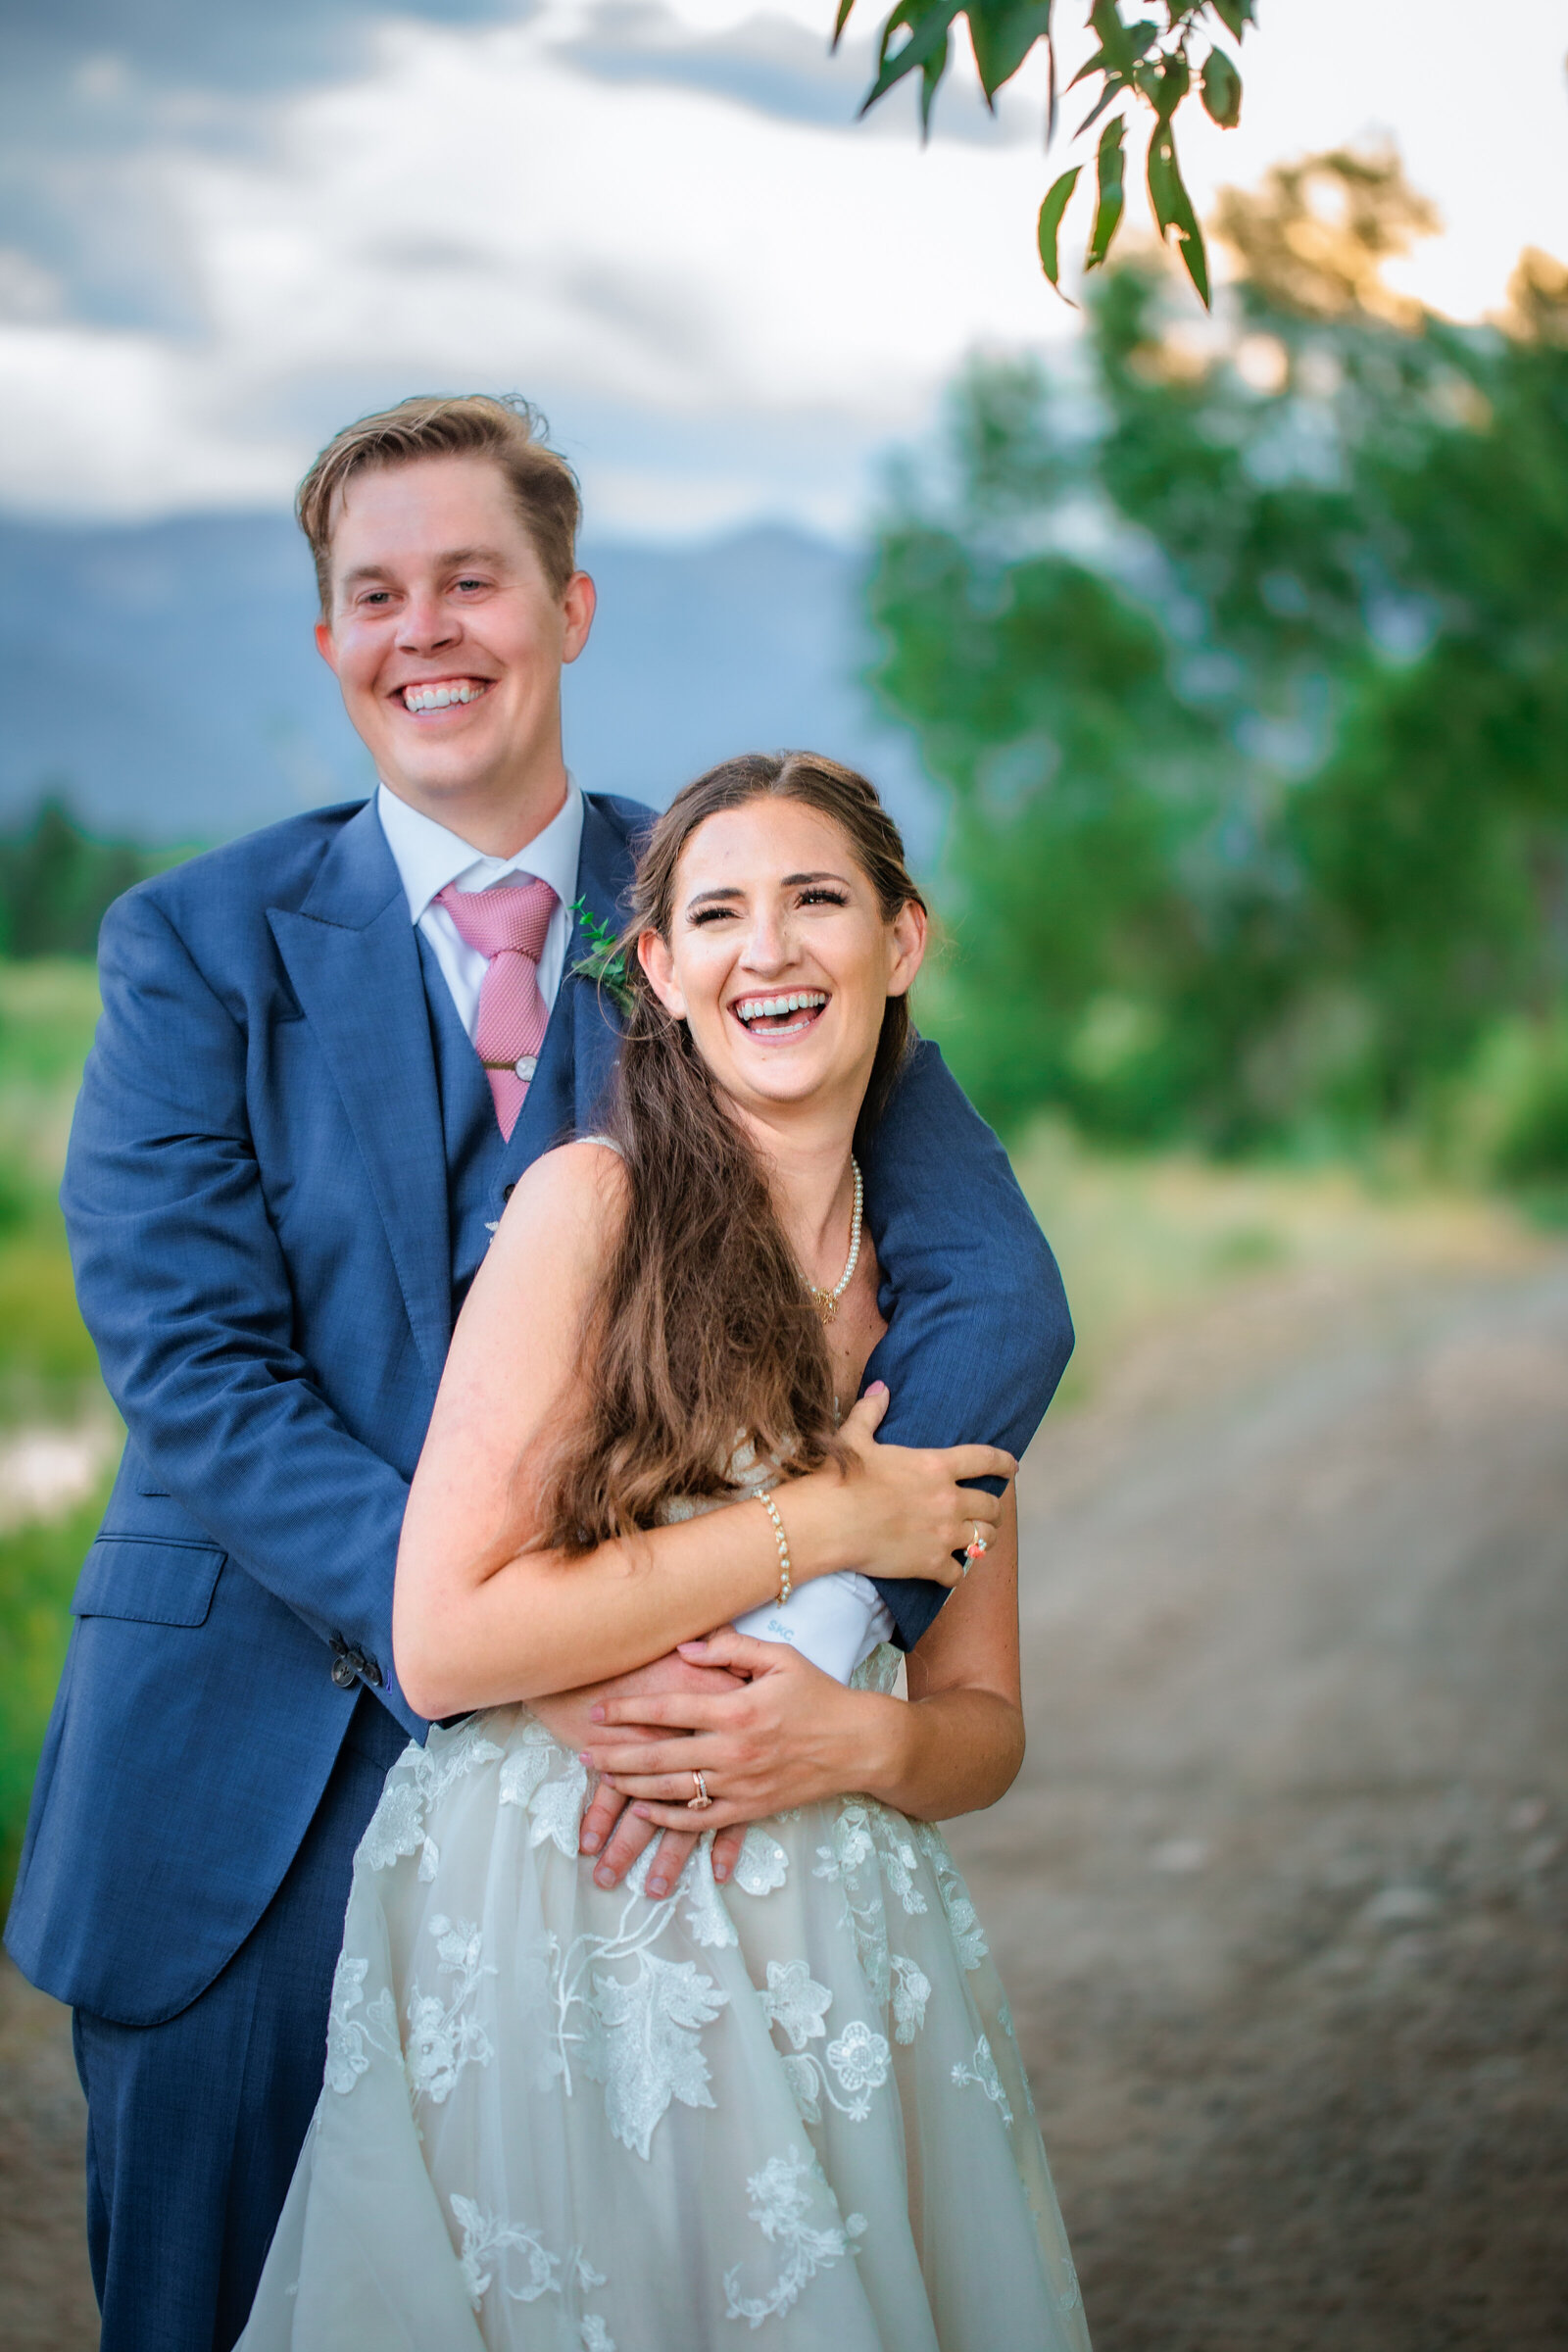 Jackson Hole wedding photographers capture couple laughing during bridal portraits